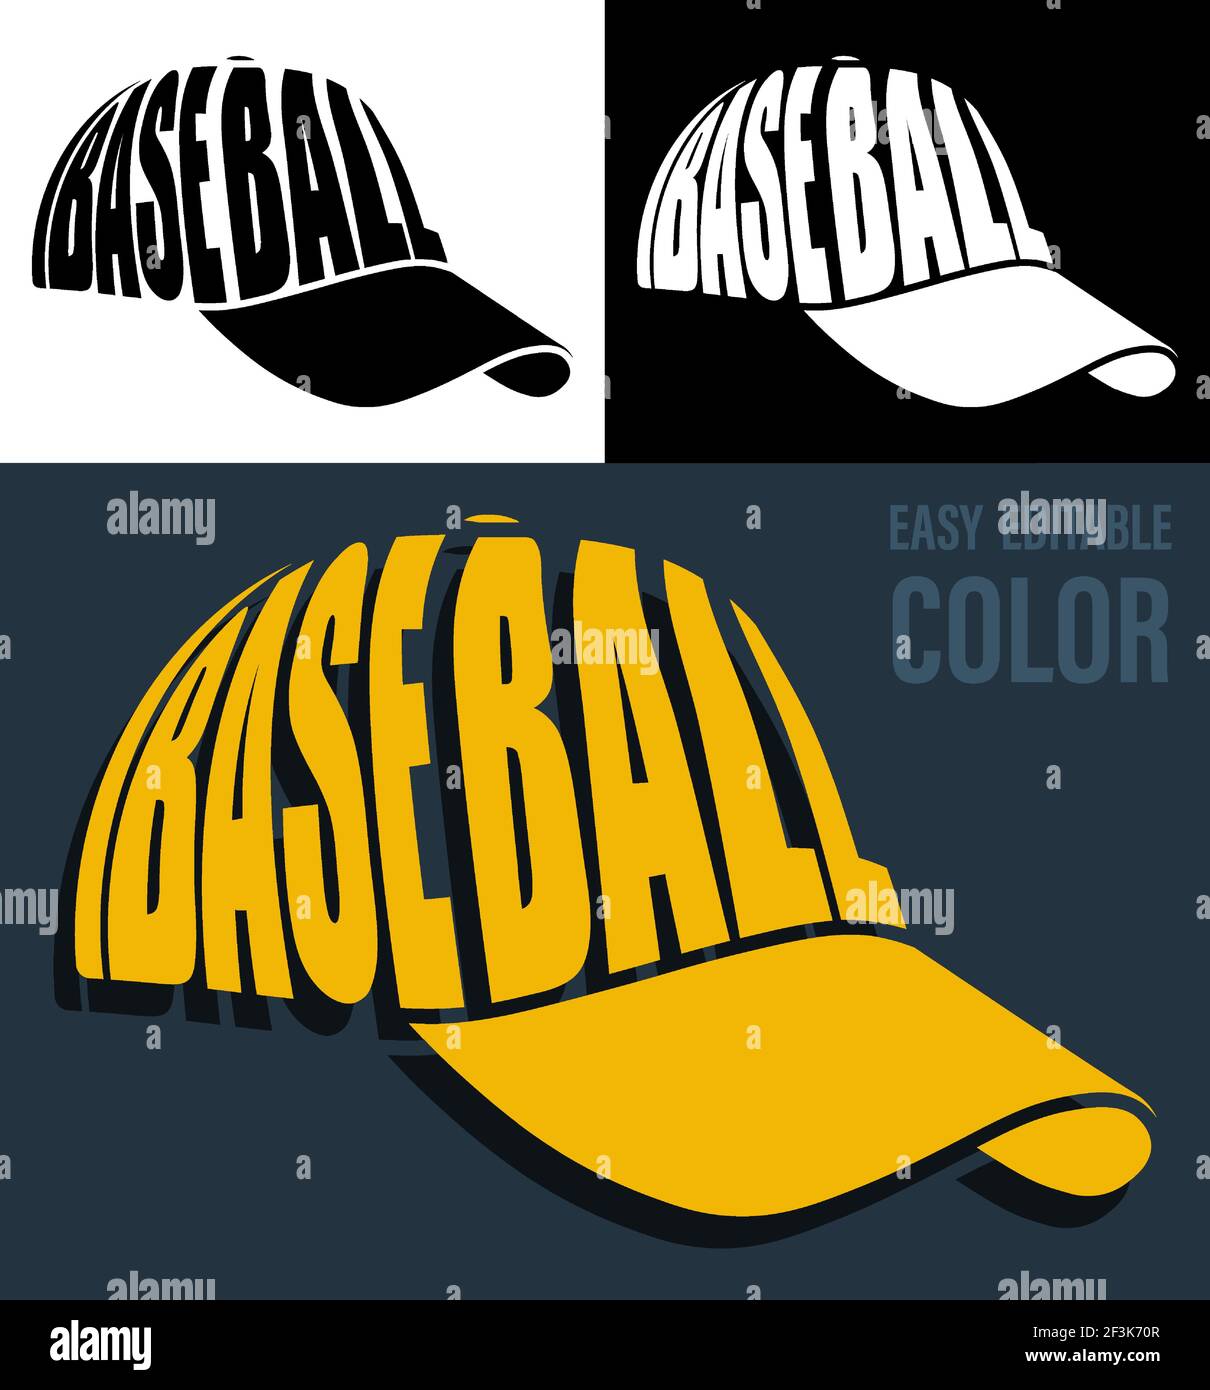 Casquette de baseball sport de style simple avec inscription DÉCORATIVE  BASEBALL. Imprimé pour les vêtements de sport. Vecteur Image Vectorielle  Stock - Alamy